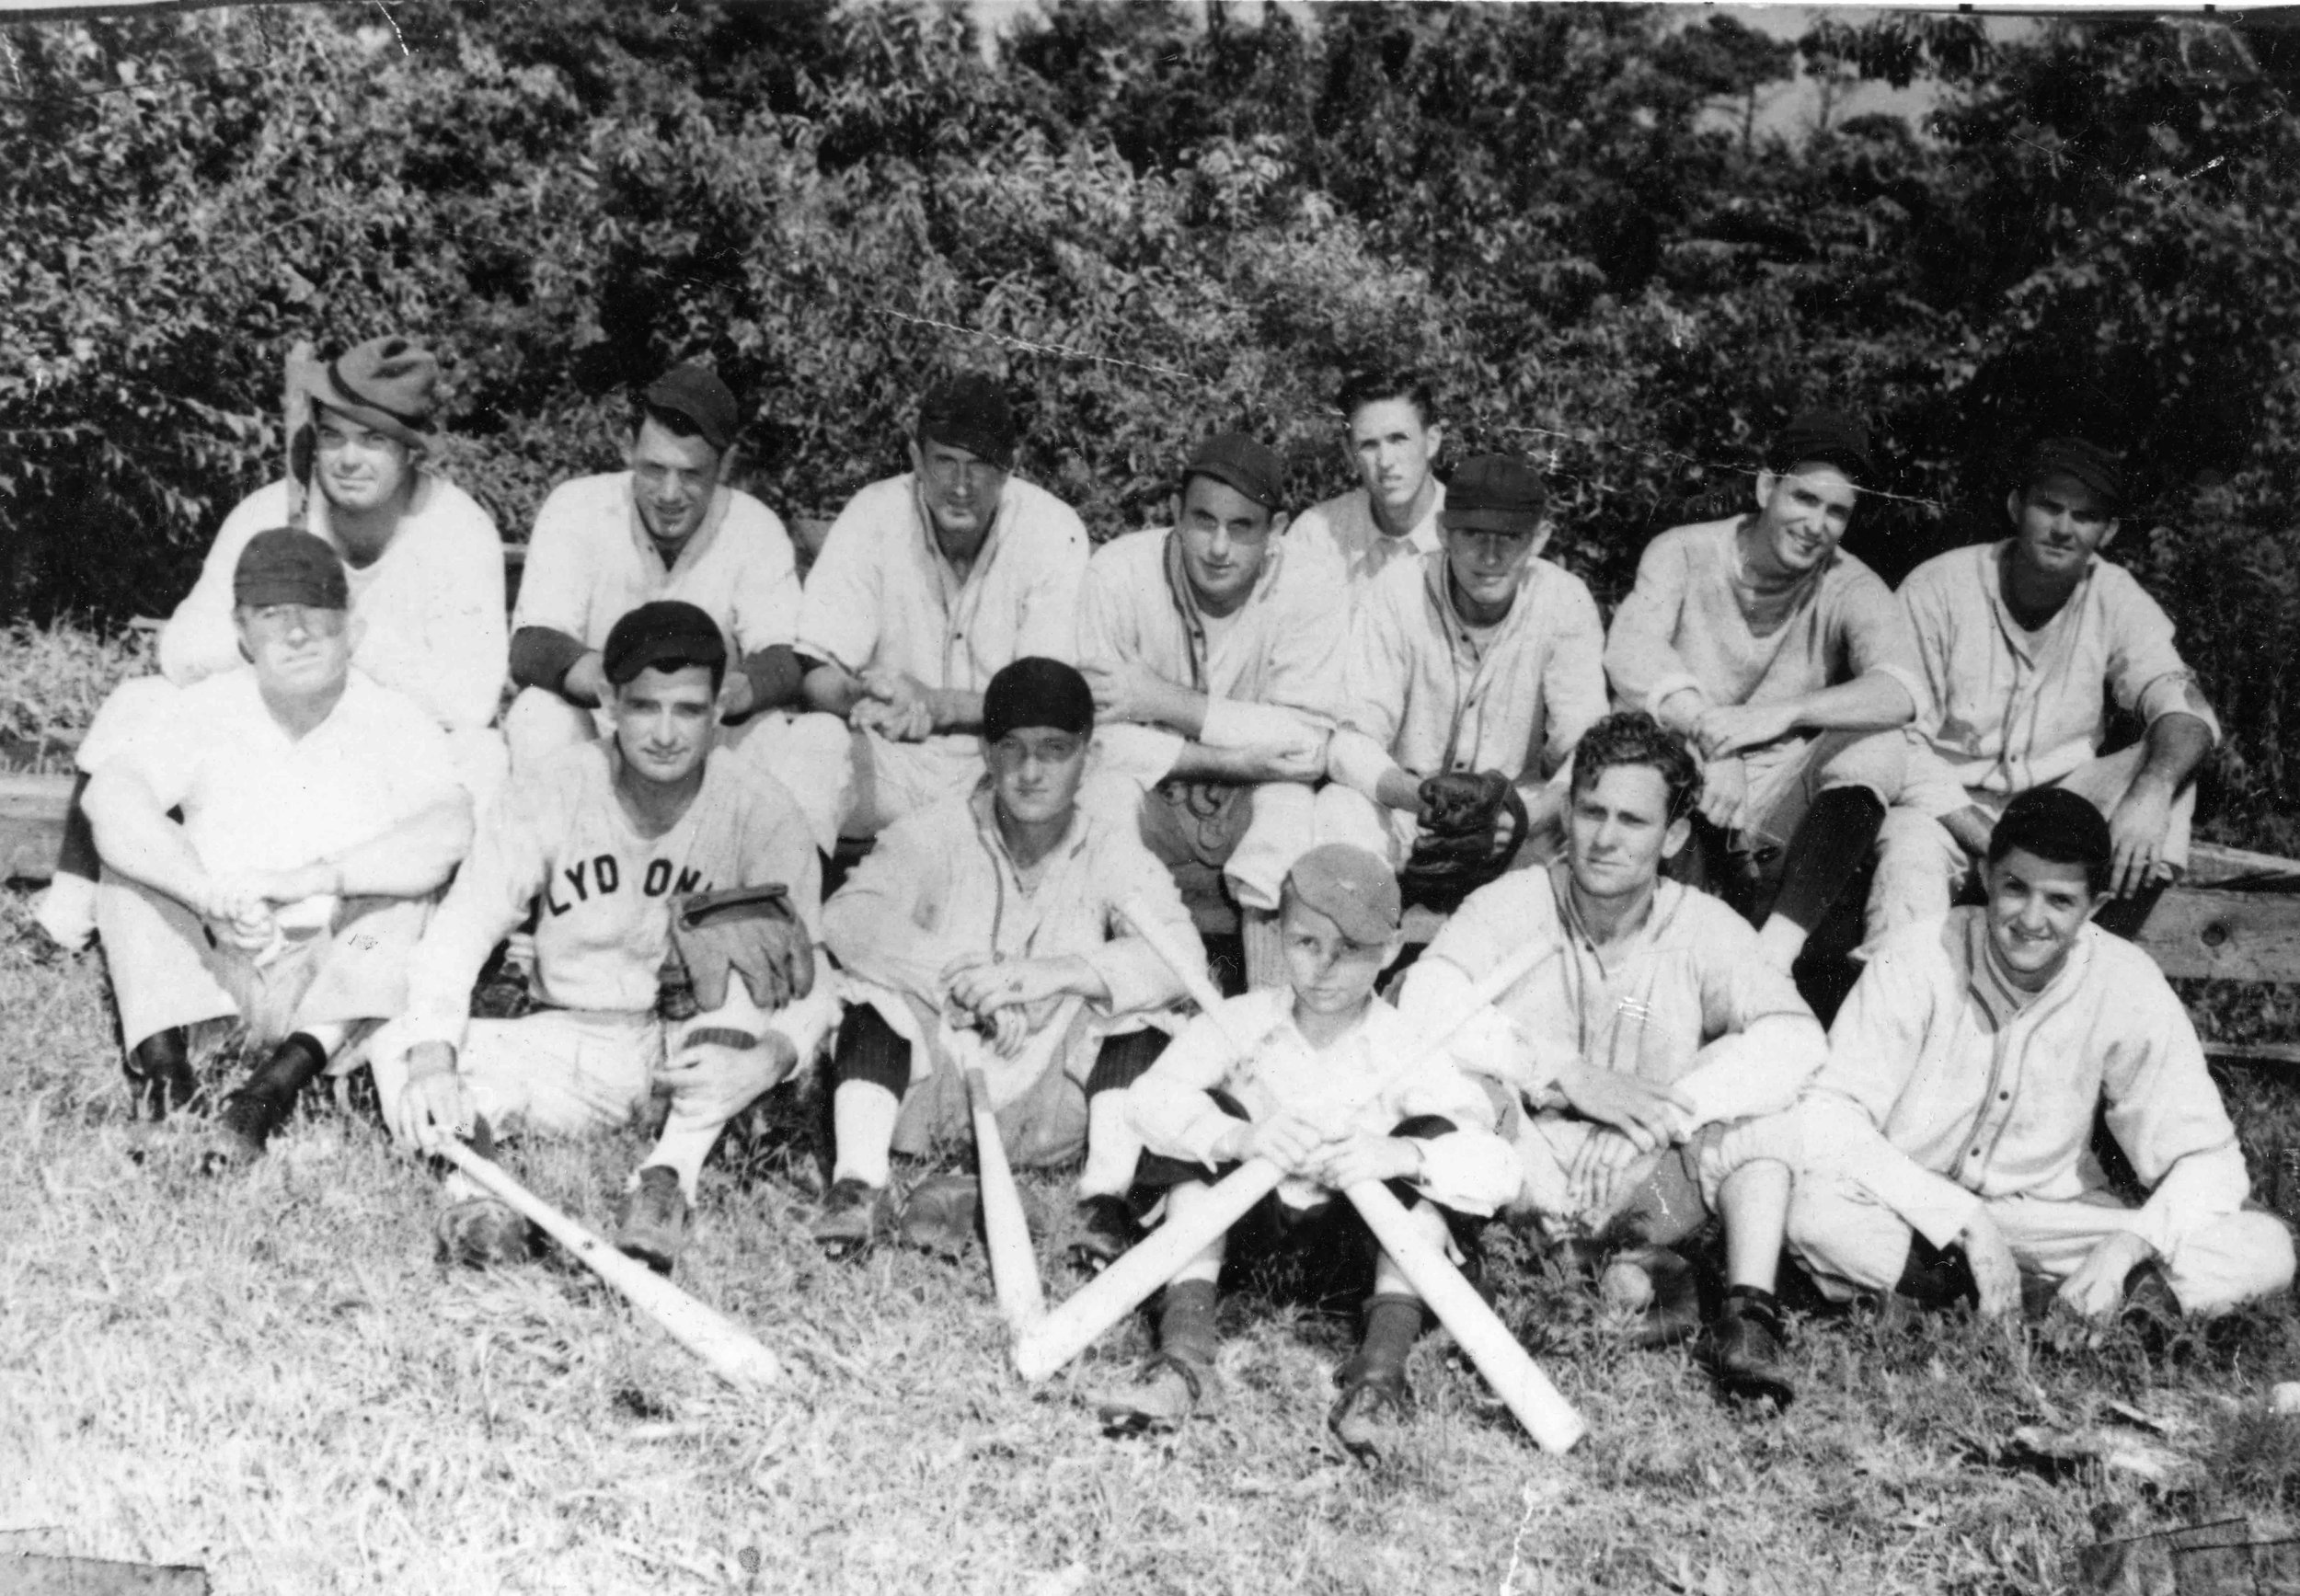 (Resized) Davis Baseball team, 1946